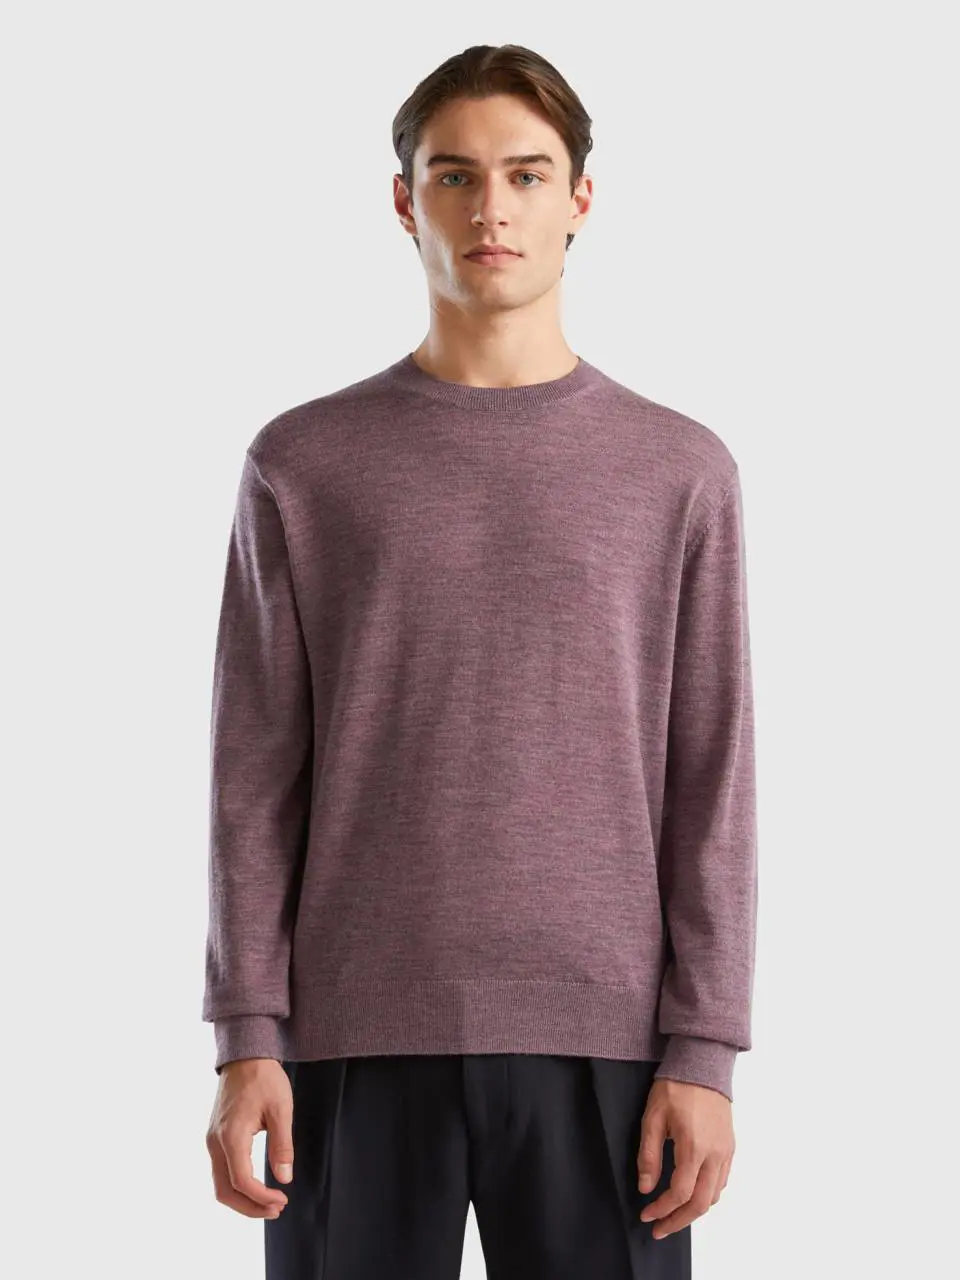 Benetton dove gray sweater in pure merino wool. 1